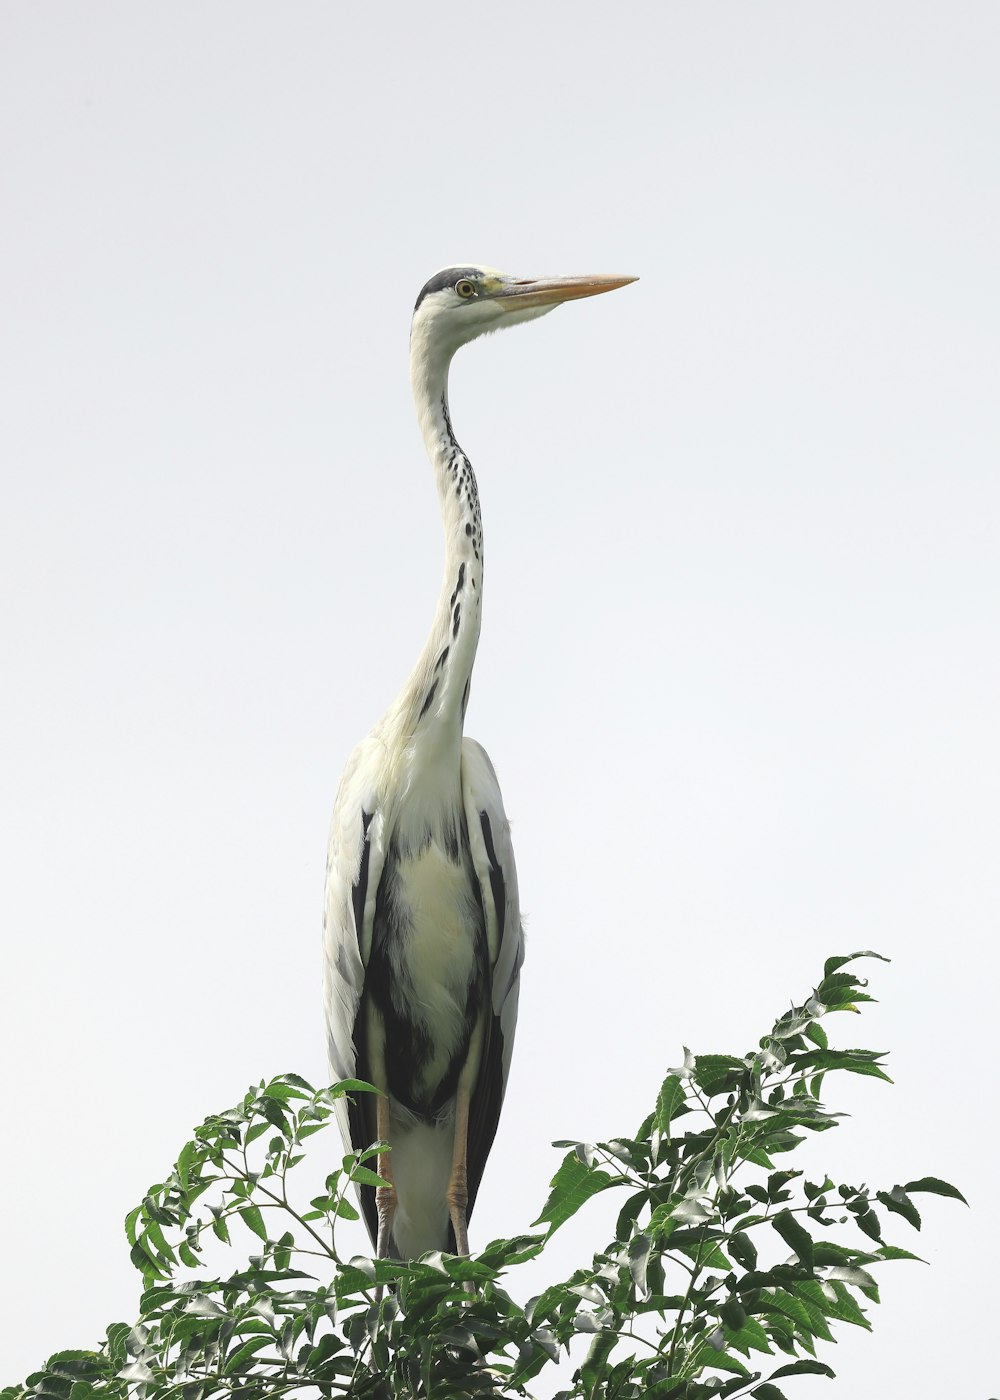 a bird standing on a branch